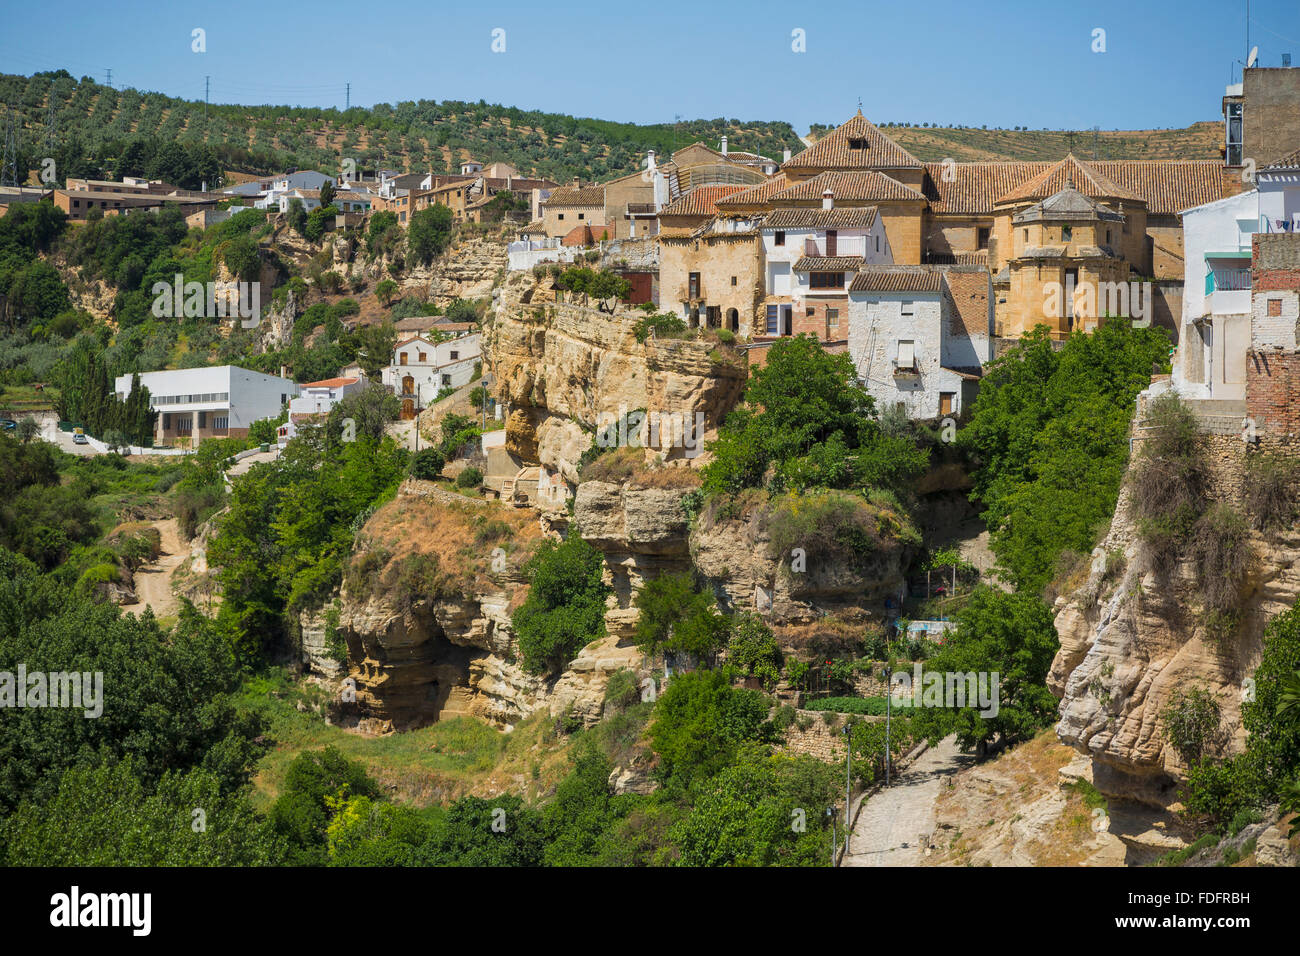 Alhama de Granada, Granada Province, Andalusia, southern Spain. Stock Photo